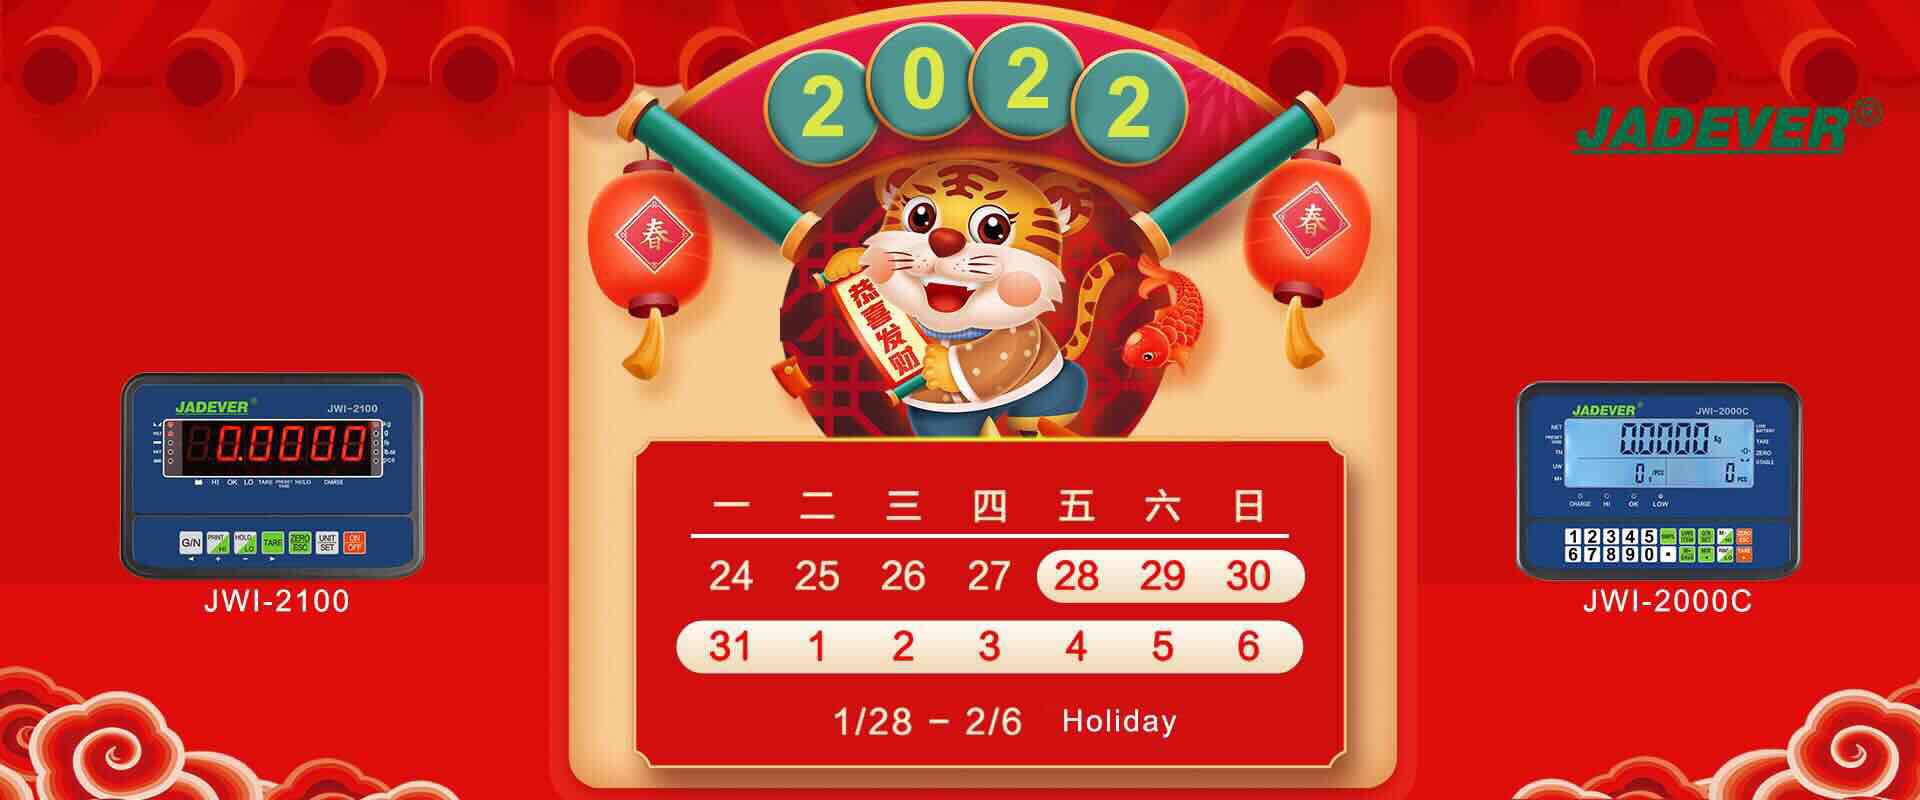 thông báo nghỉ lễ - tết âm lịch 2022